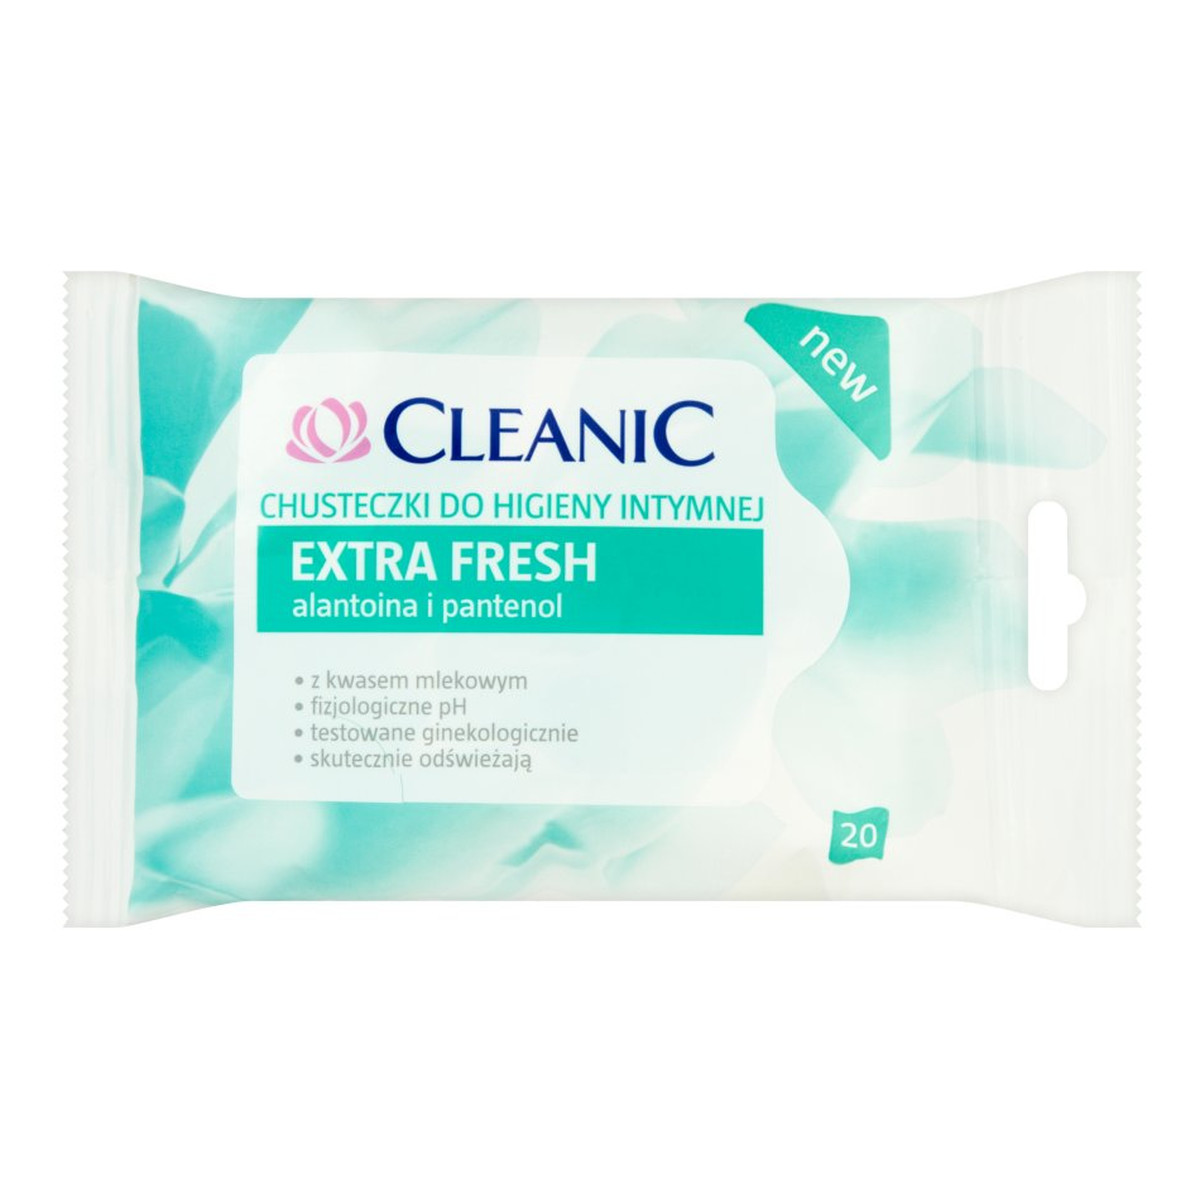 Cleanic Extra Fresh Chusteczki do higieny intymnej 20szt